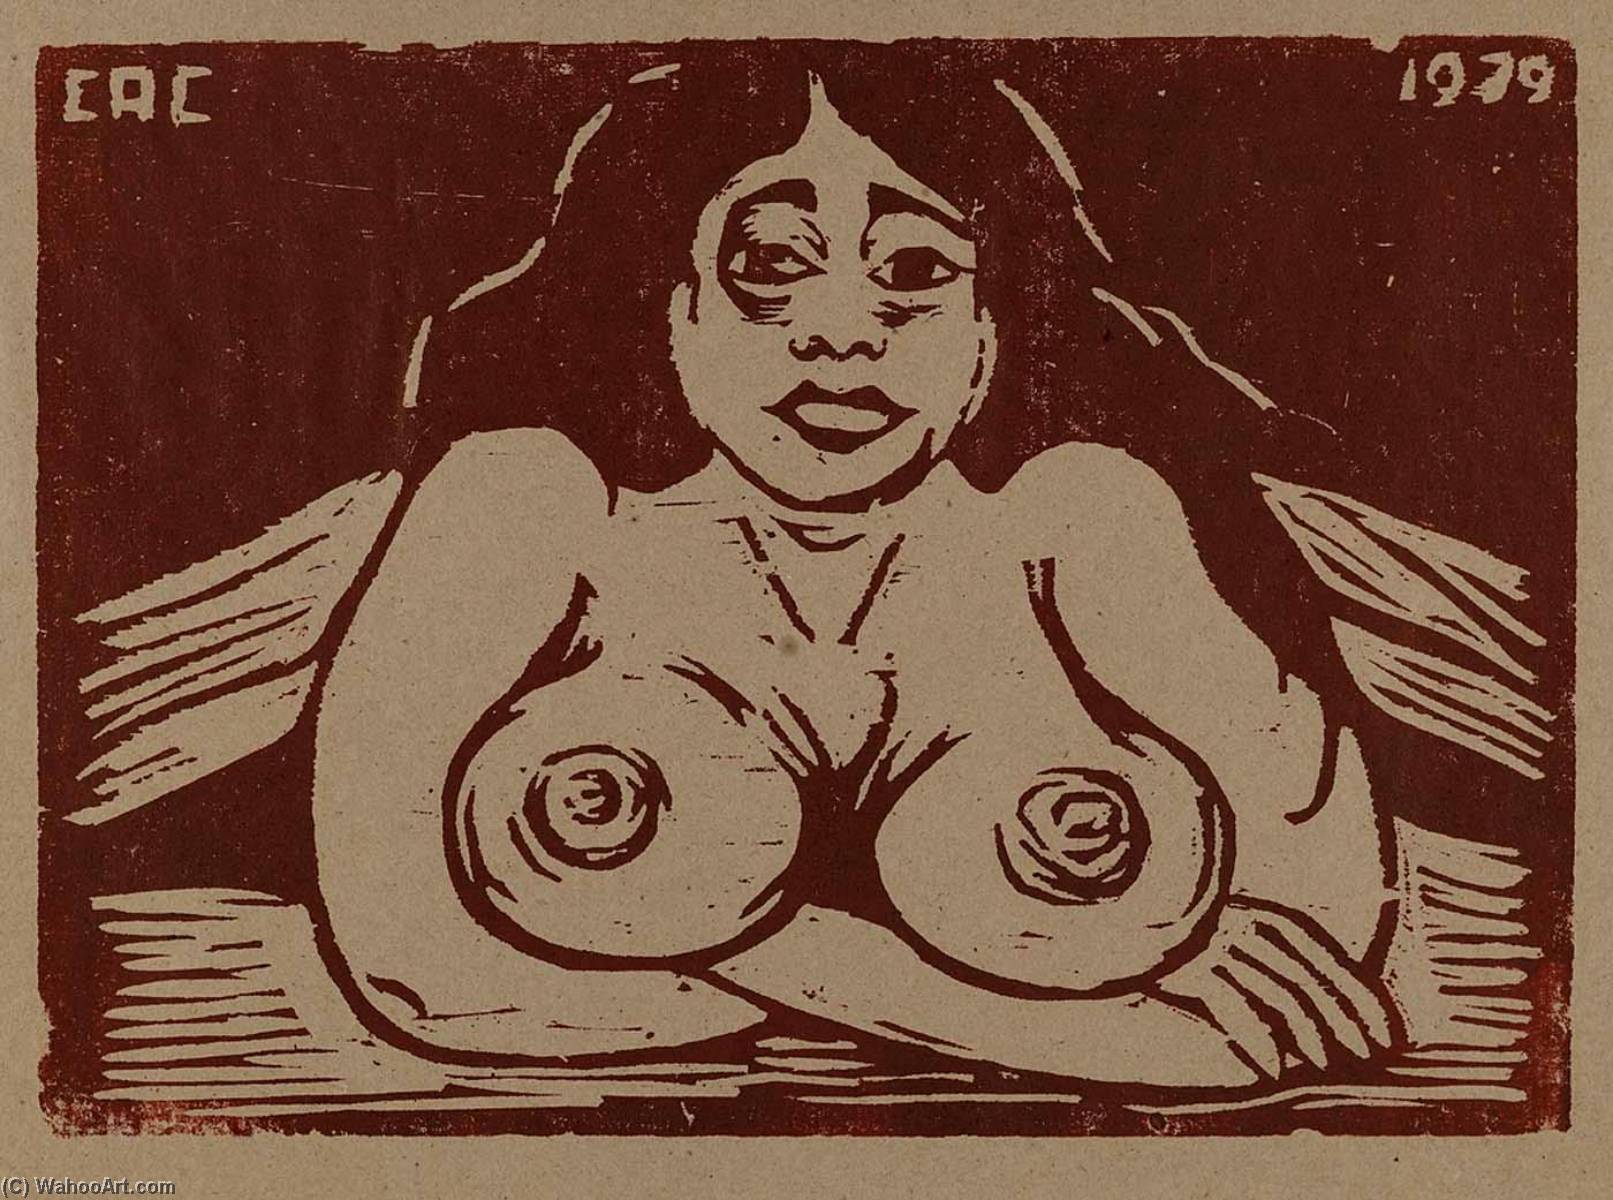 WikiOO.org - Encyclopedia of Fine Arts - Målning, konstverk Carlos A Cortéz - Untitled (half portrait of nude woman)